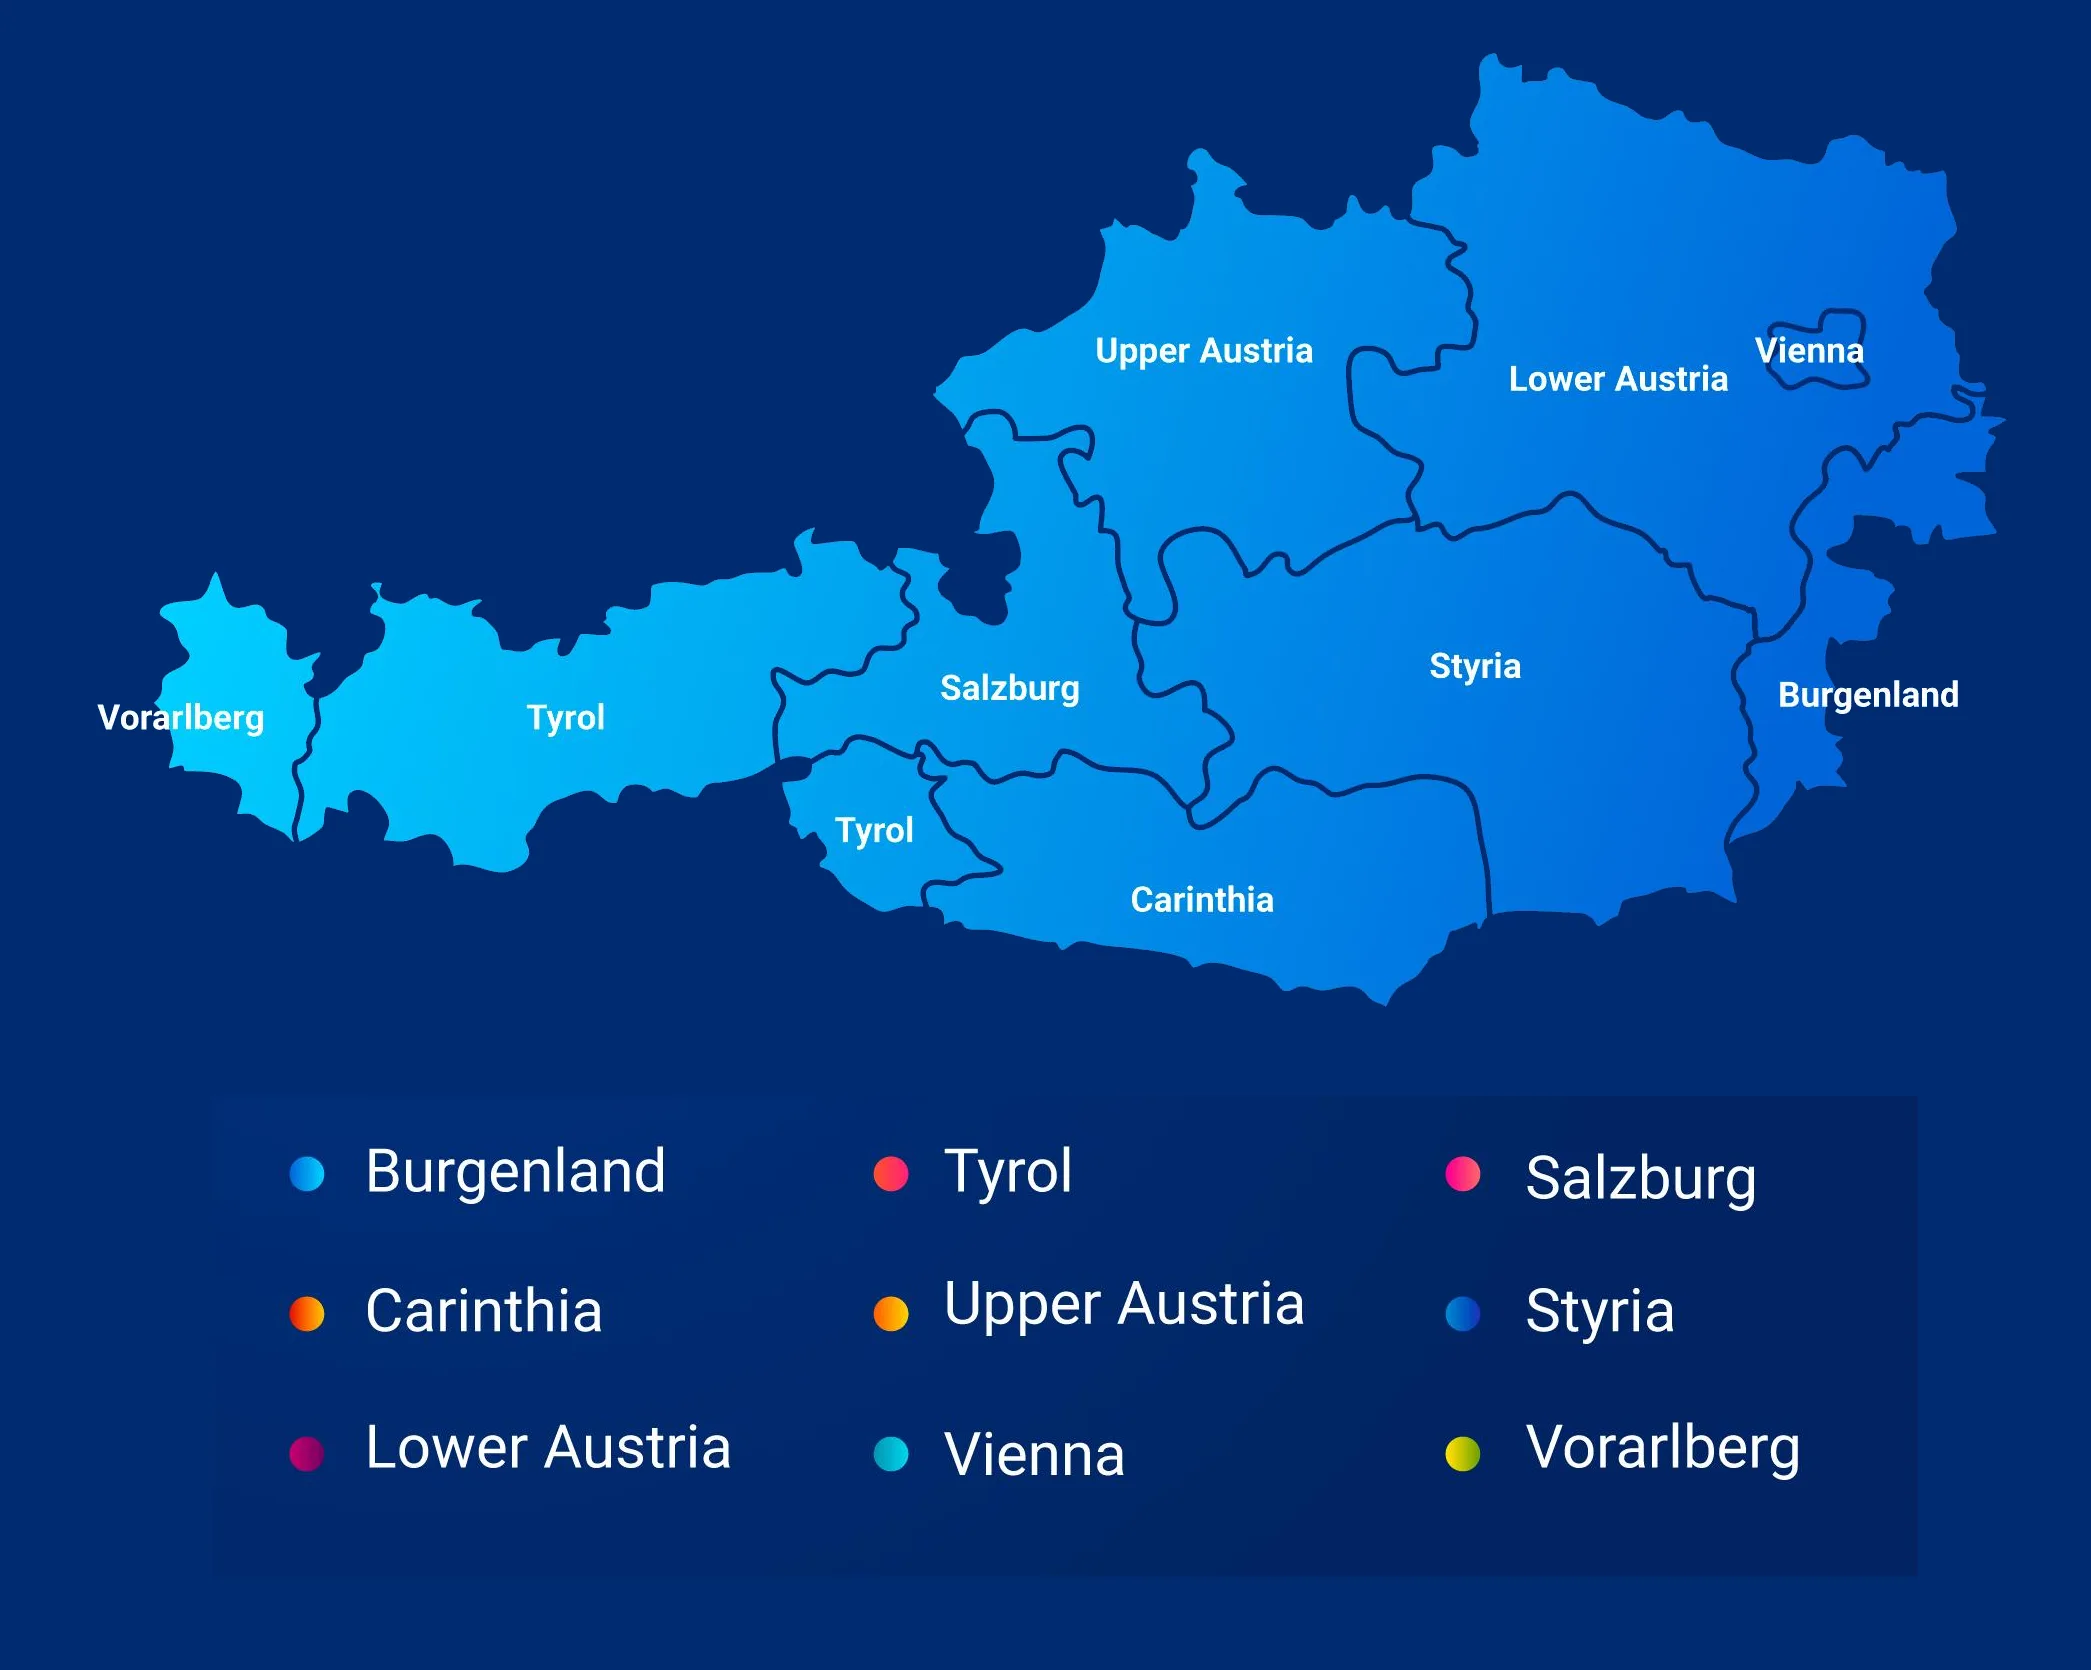 خريطة النمسا